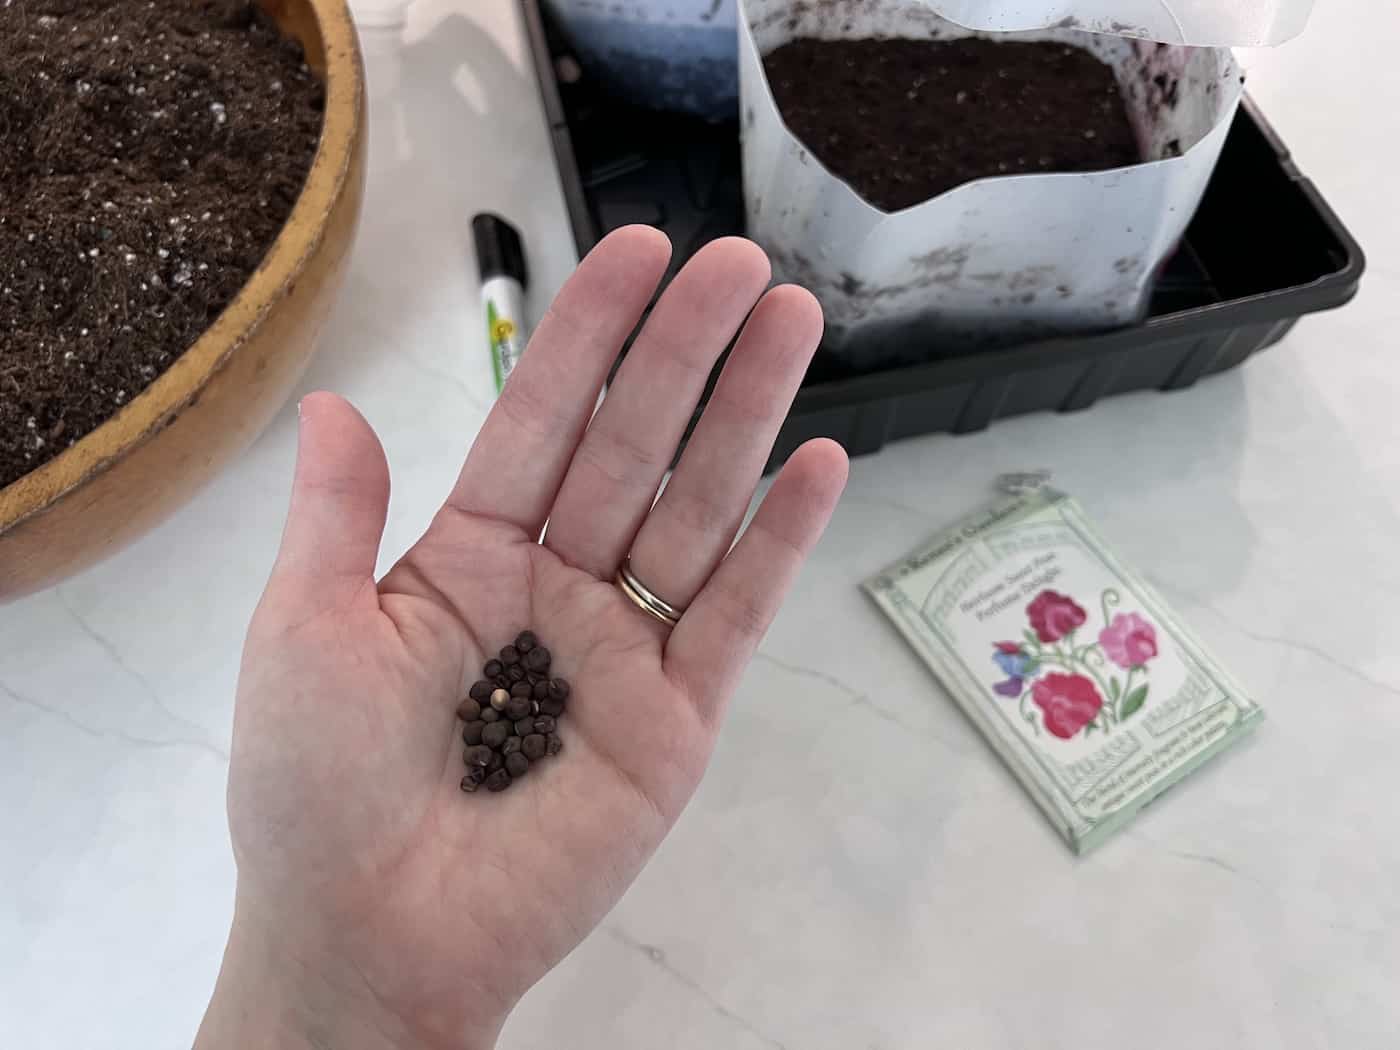 Sweet pea seeds held in hand